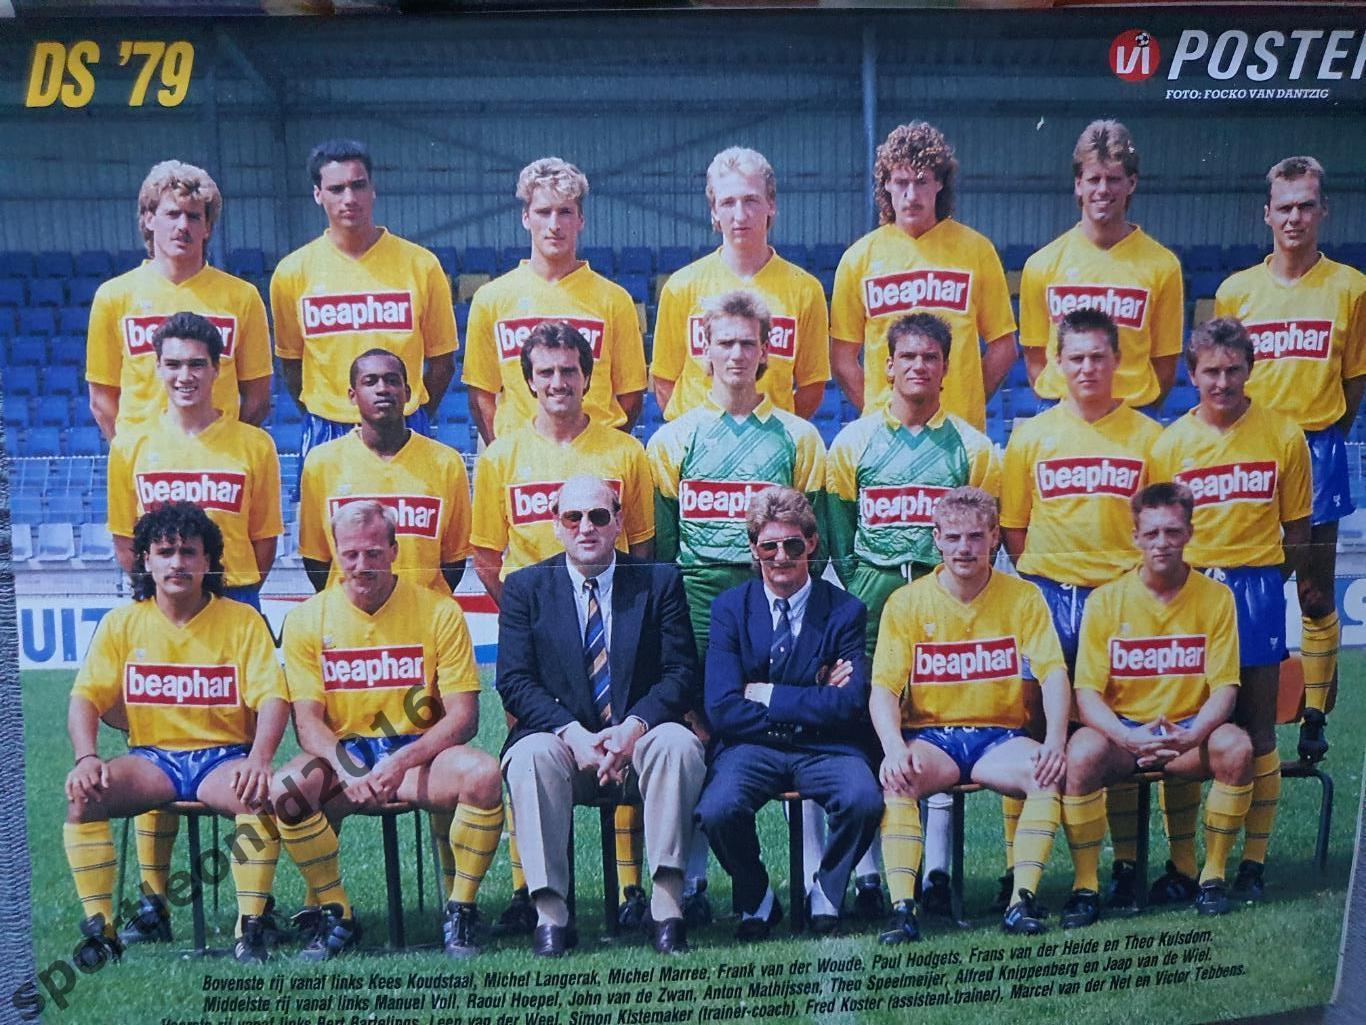 Voetbal International 1988.Годовая подписка.52 номера +4 спецвыпуска к Евро-88.5 4